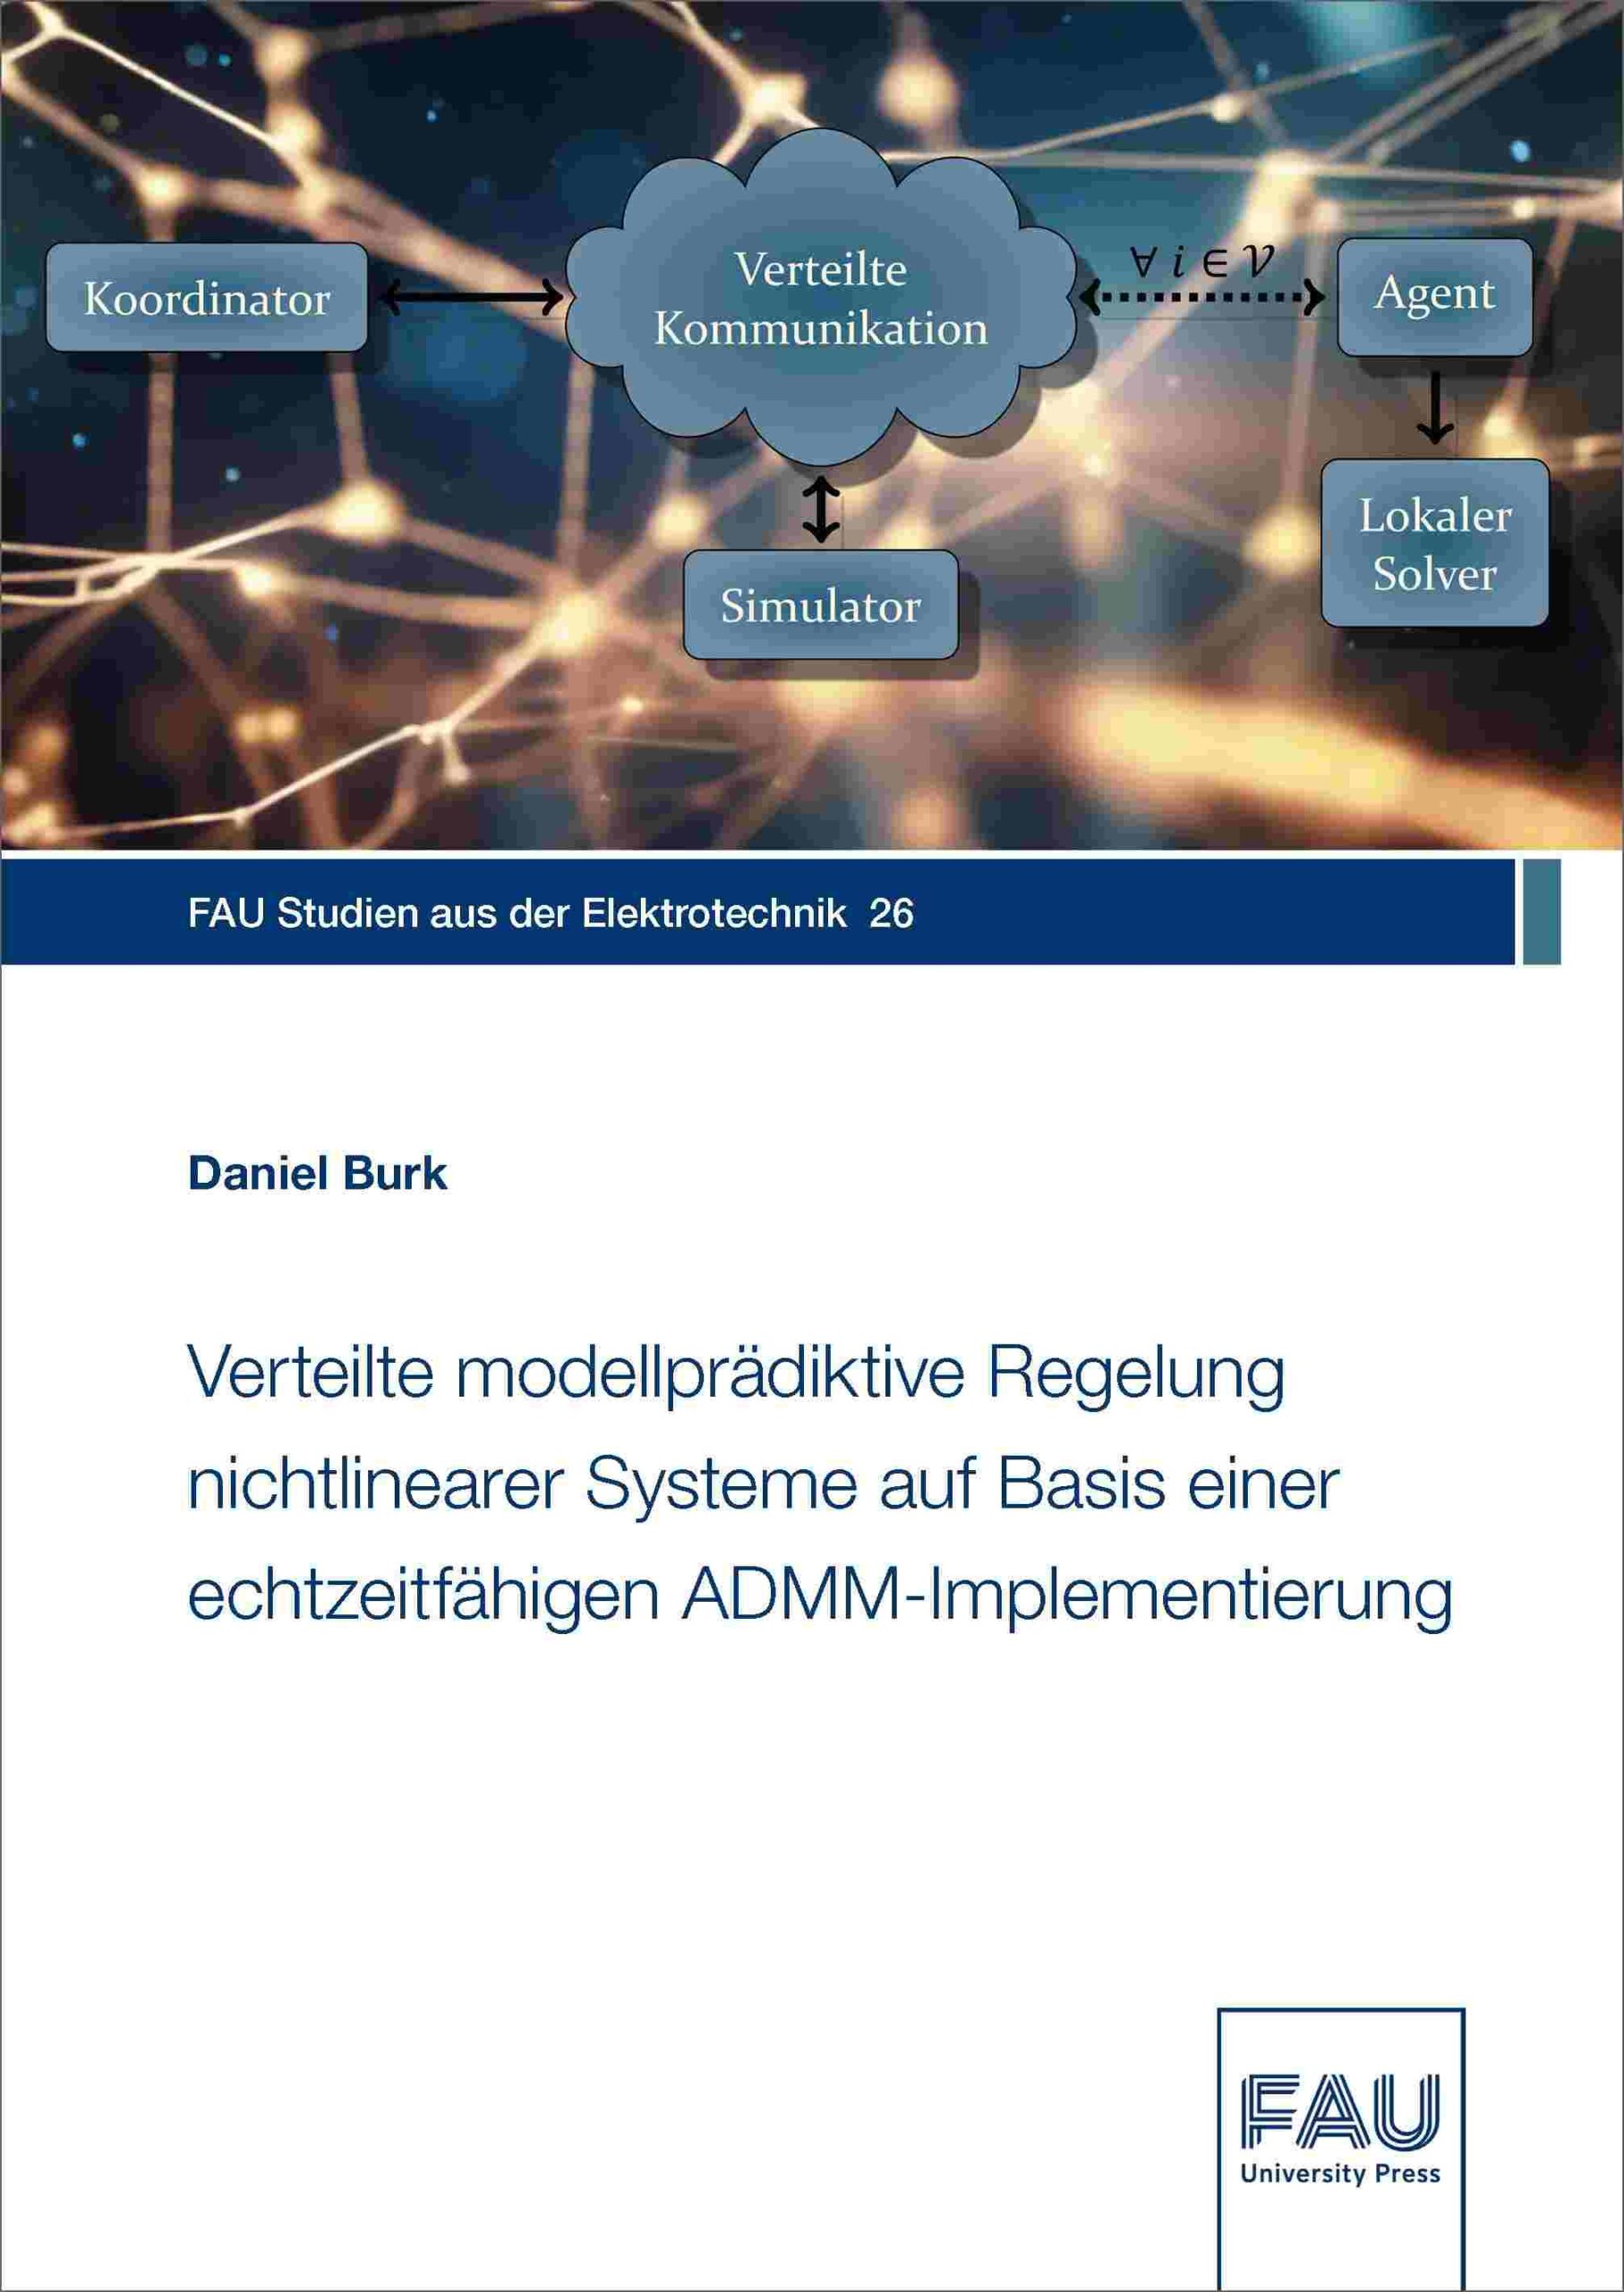 Verteilte modellprädiktive Regelung nichtlinearer Systeme auf Basis einer echtzeitfähigen ADMM-Implementierung